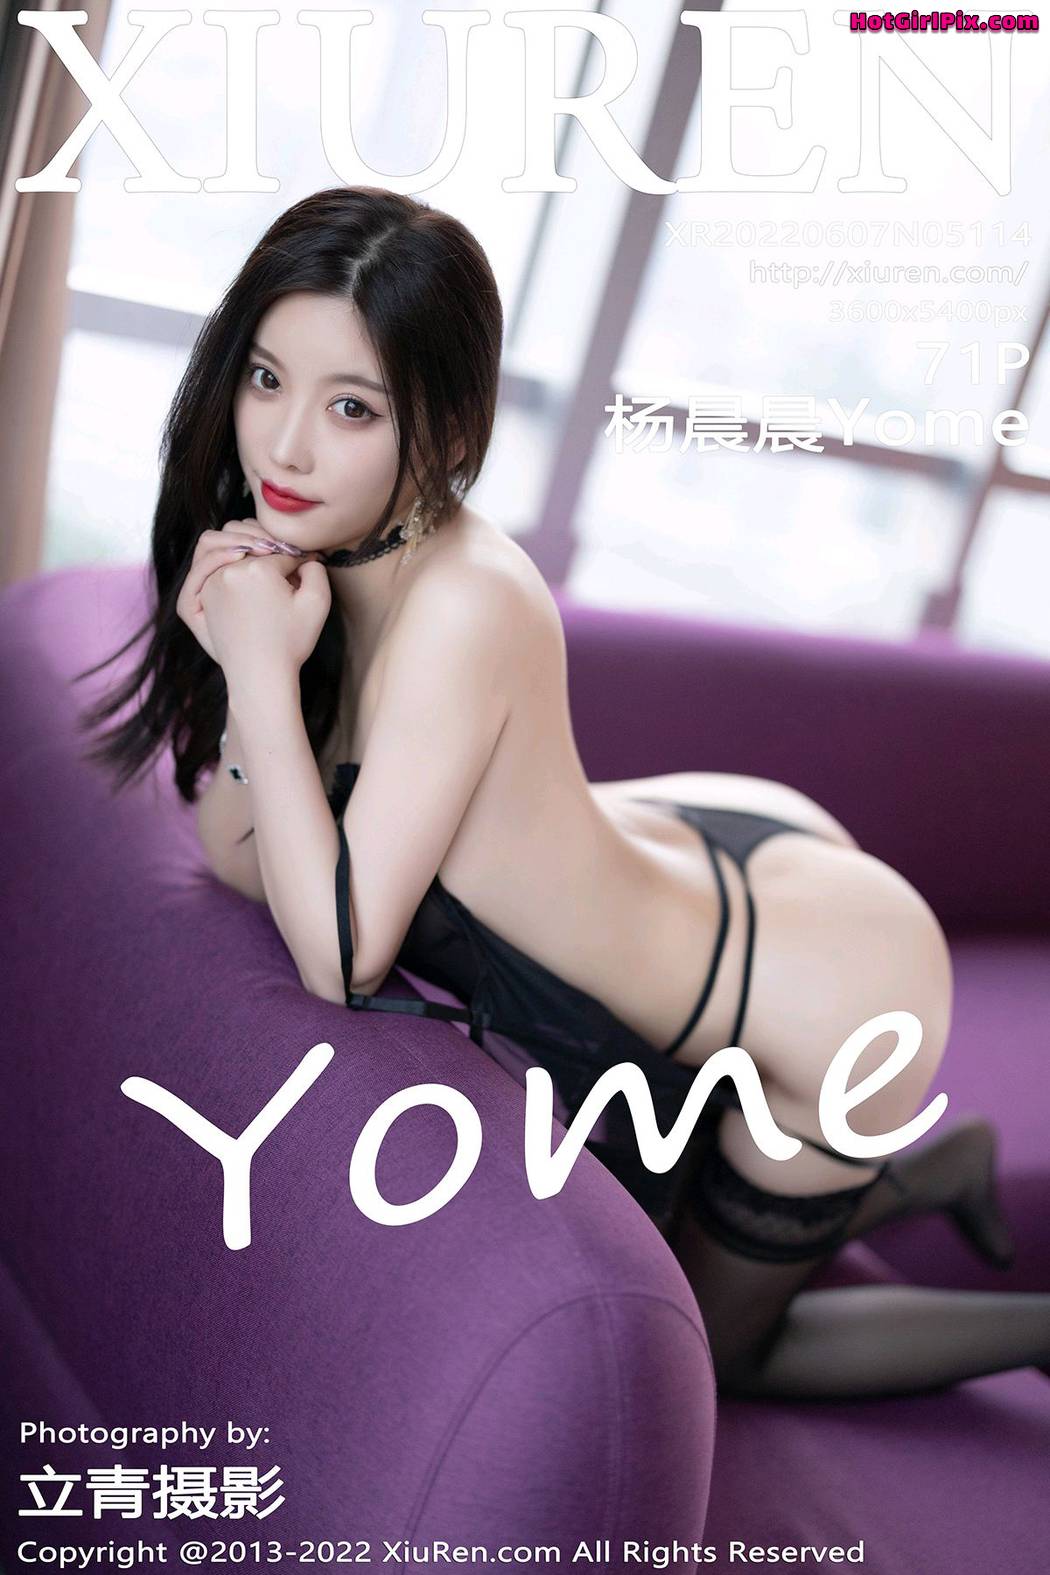 [XIUREN] No.5114 Yang Chen Chen 杨晨晨Yome (Yang Chen Chen 杨晨晨sugar) Cover Photo